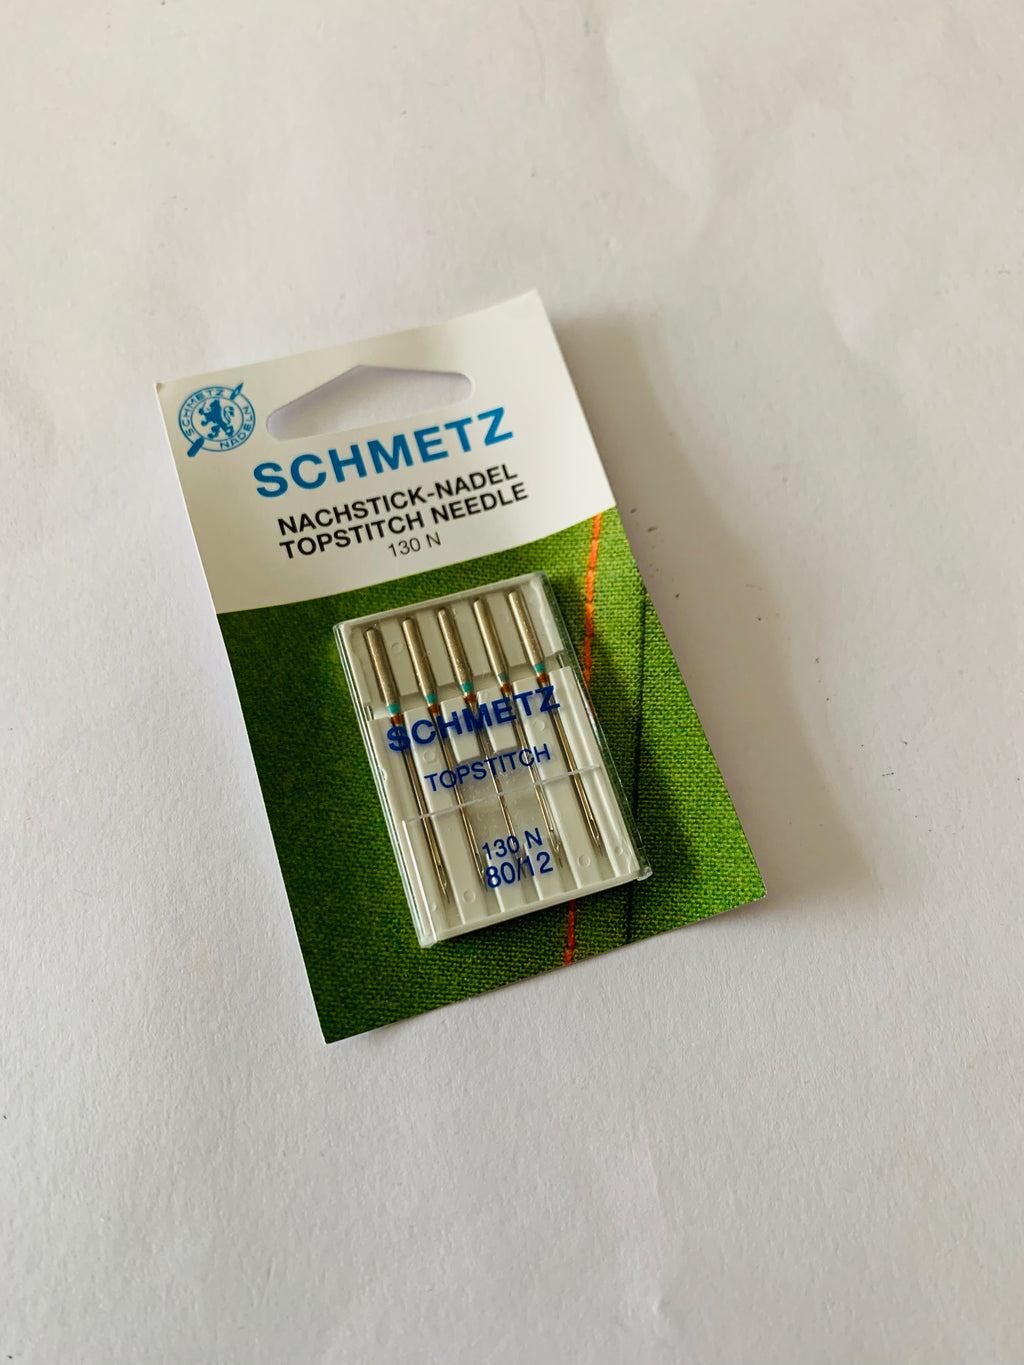 Schmetz Top Stitch needle: 80/12